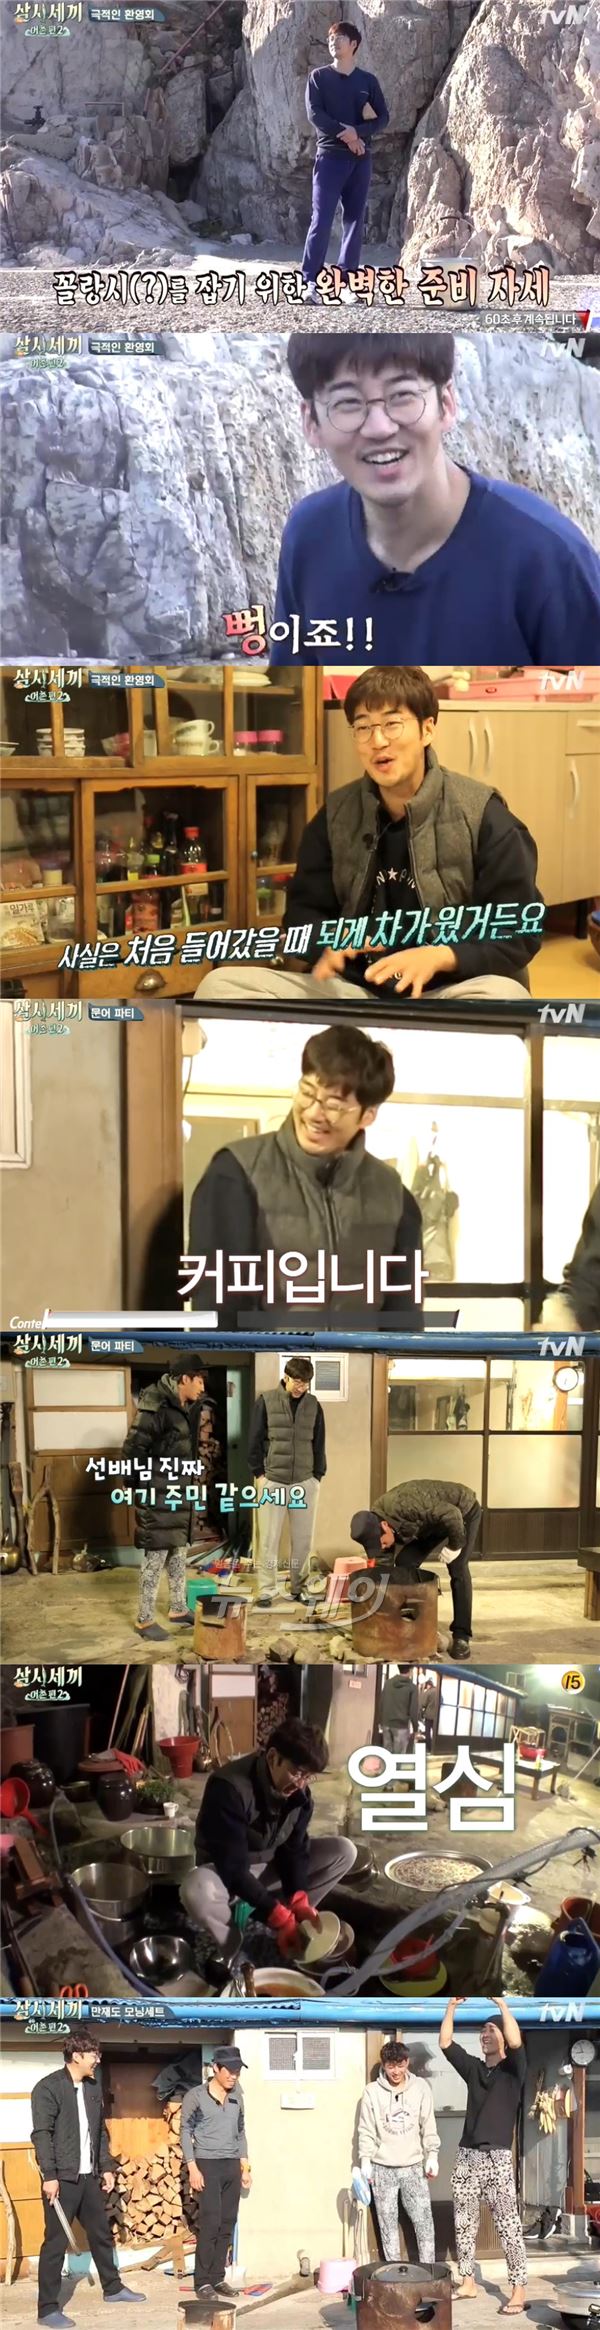 tvN '삼시세끼-어촌편2' 윤계상이 만재도에 최적화된 모습으로 남다른 예능감을 발휘했다  /사진= '삼시세끼' 영상캡처